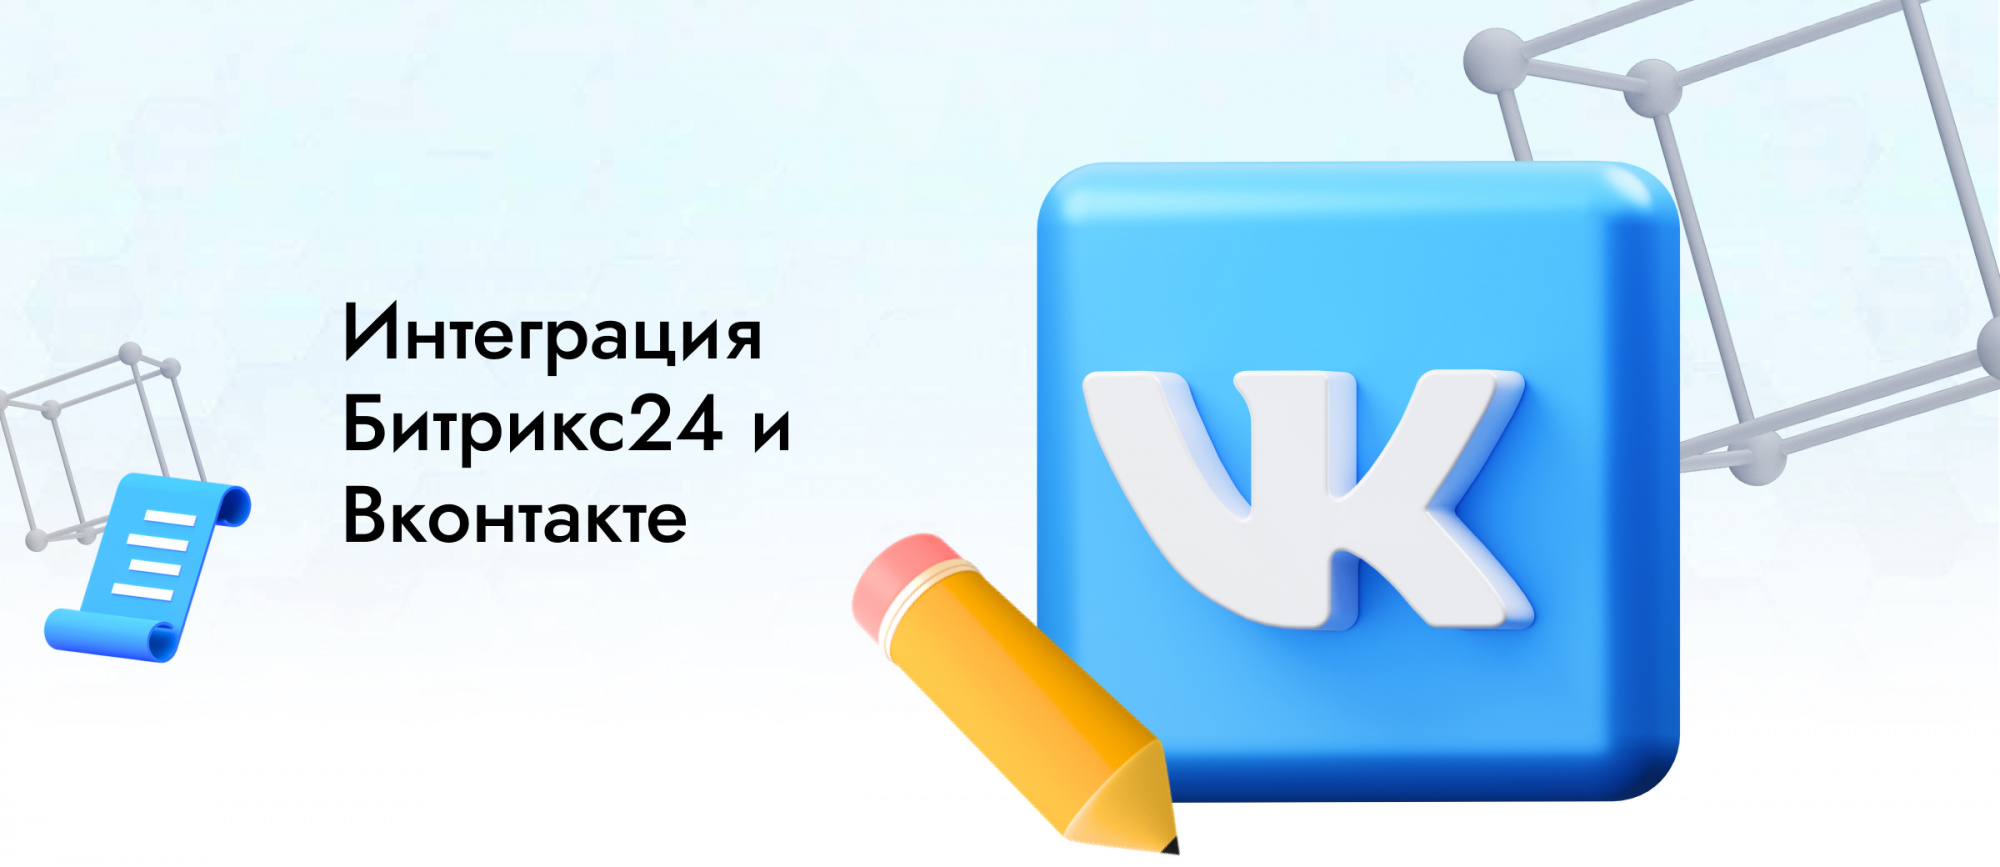 Интеграция Битрикс24 с сообществом Вконтакте и приём заказов